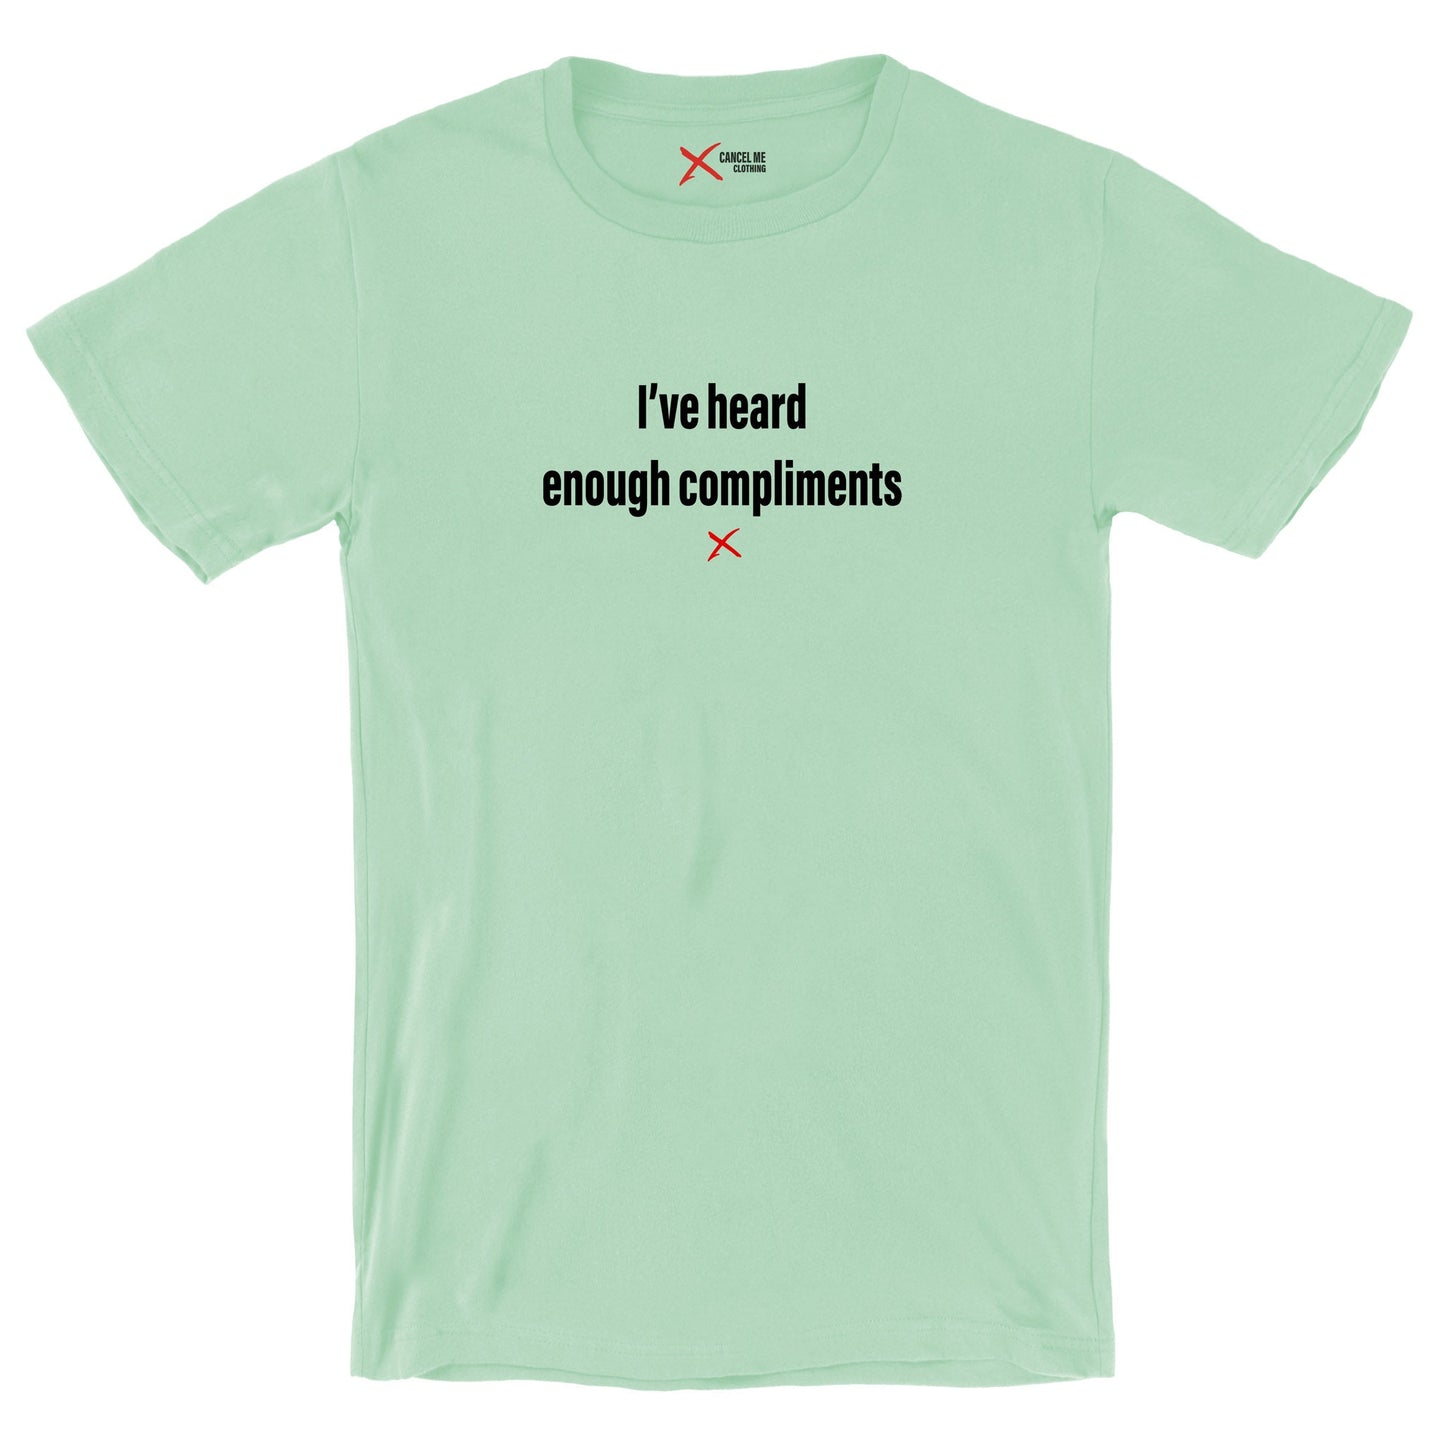 I've heard enough compliments - Shirt